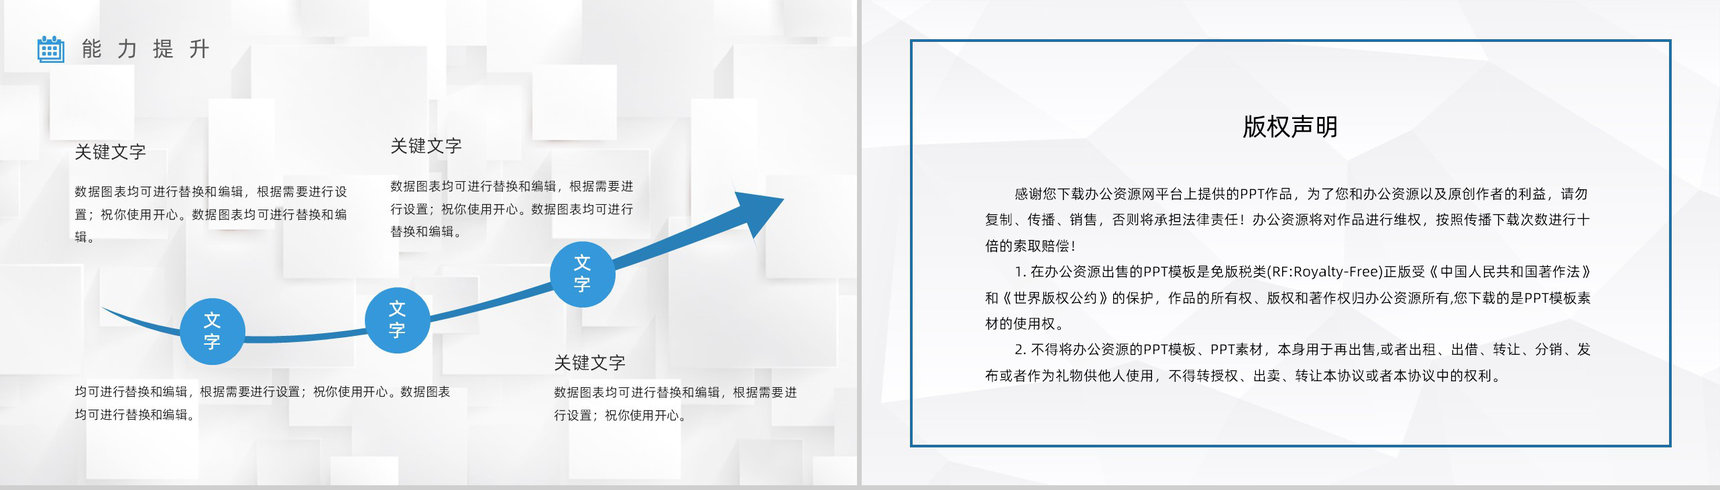 中国农业银行工作总结数据报告PPT模板-13